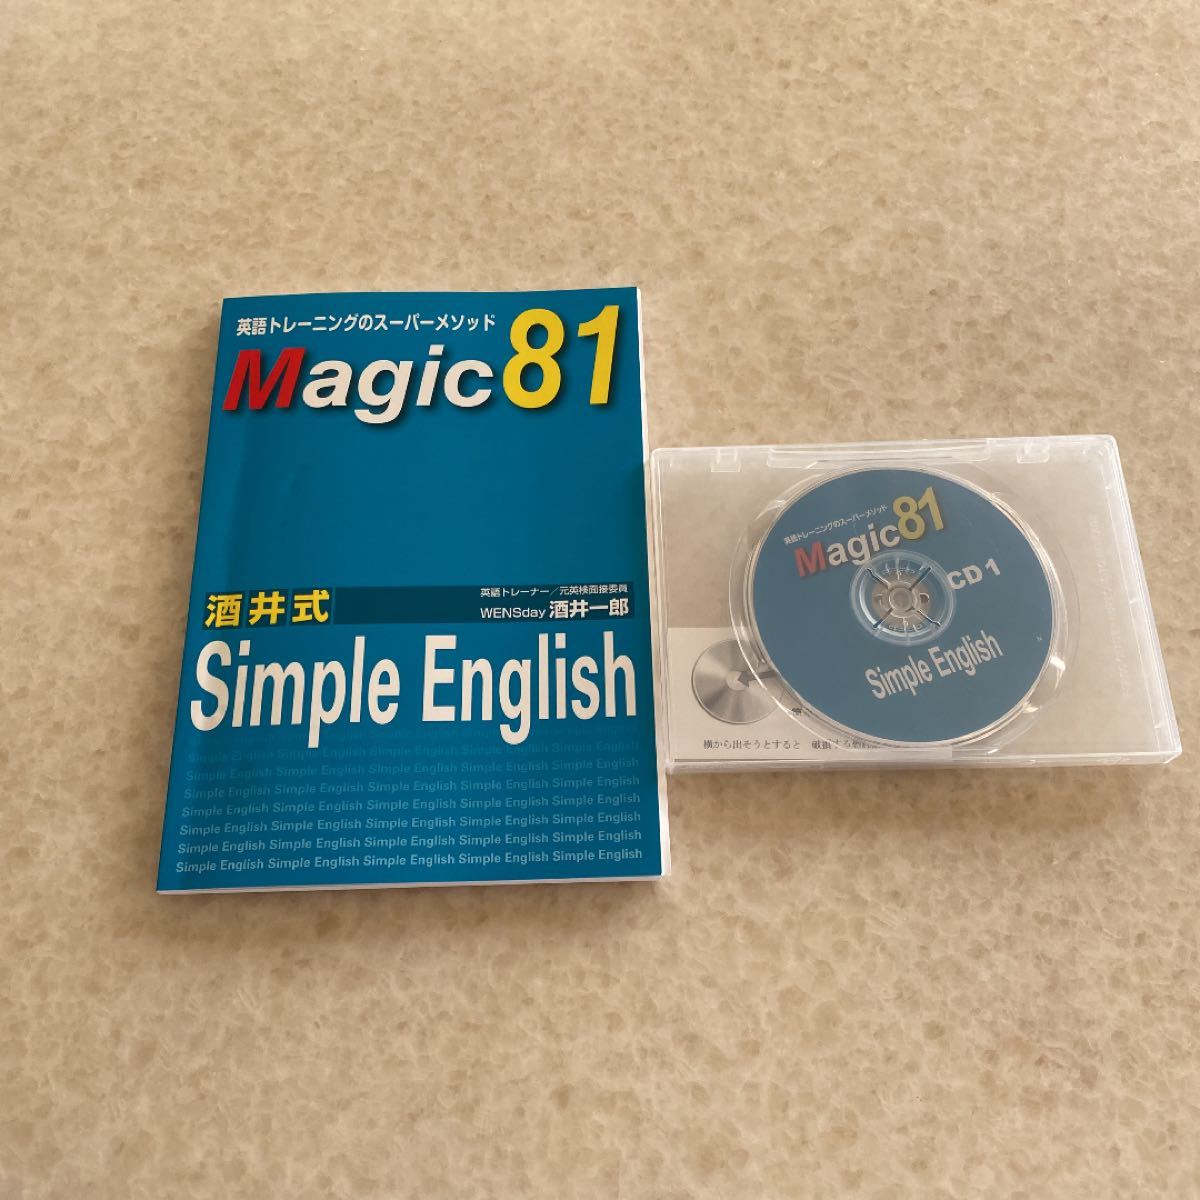 テキストのみ】Magic81 CD等なし 酒井式 Simple English 英語